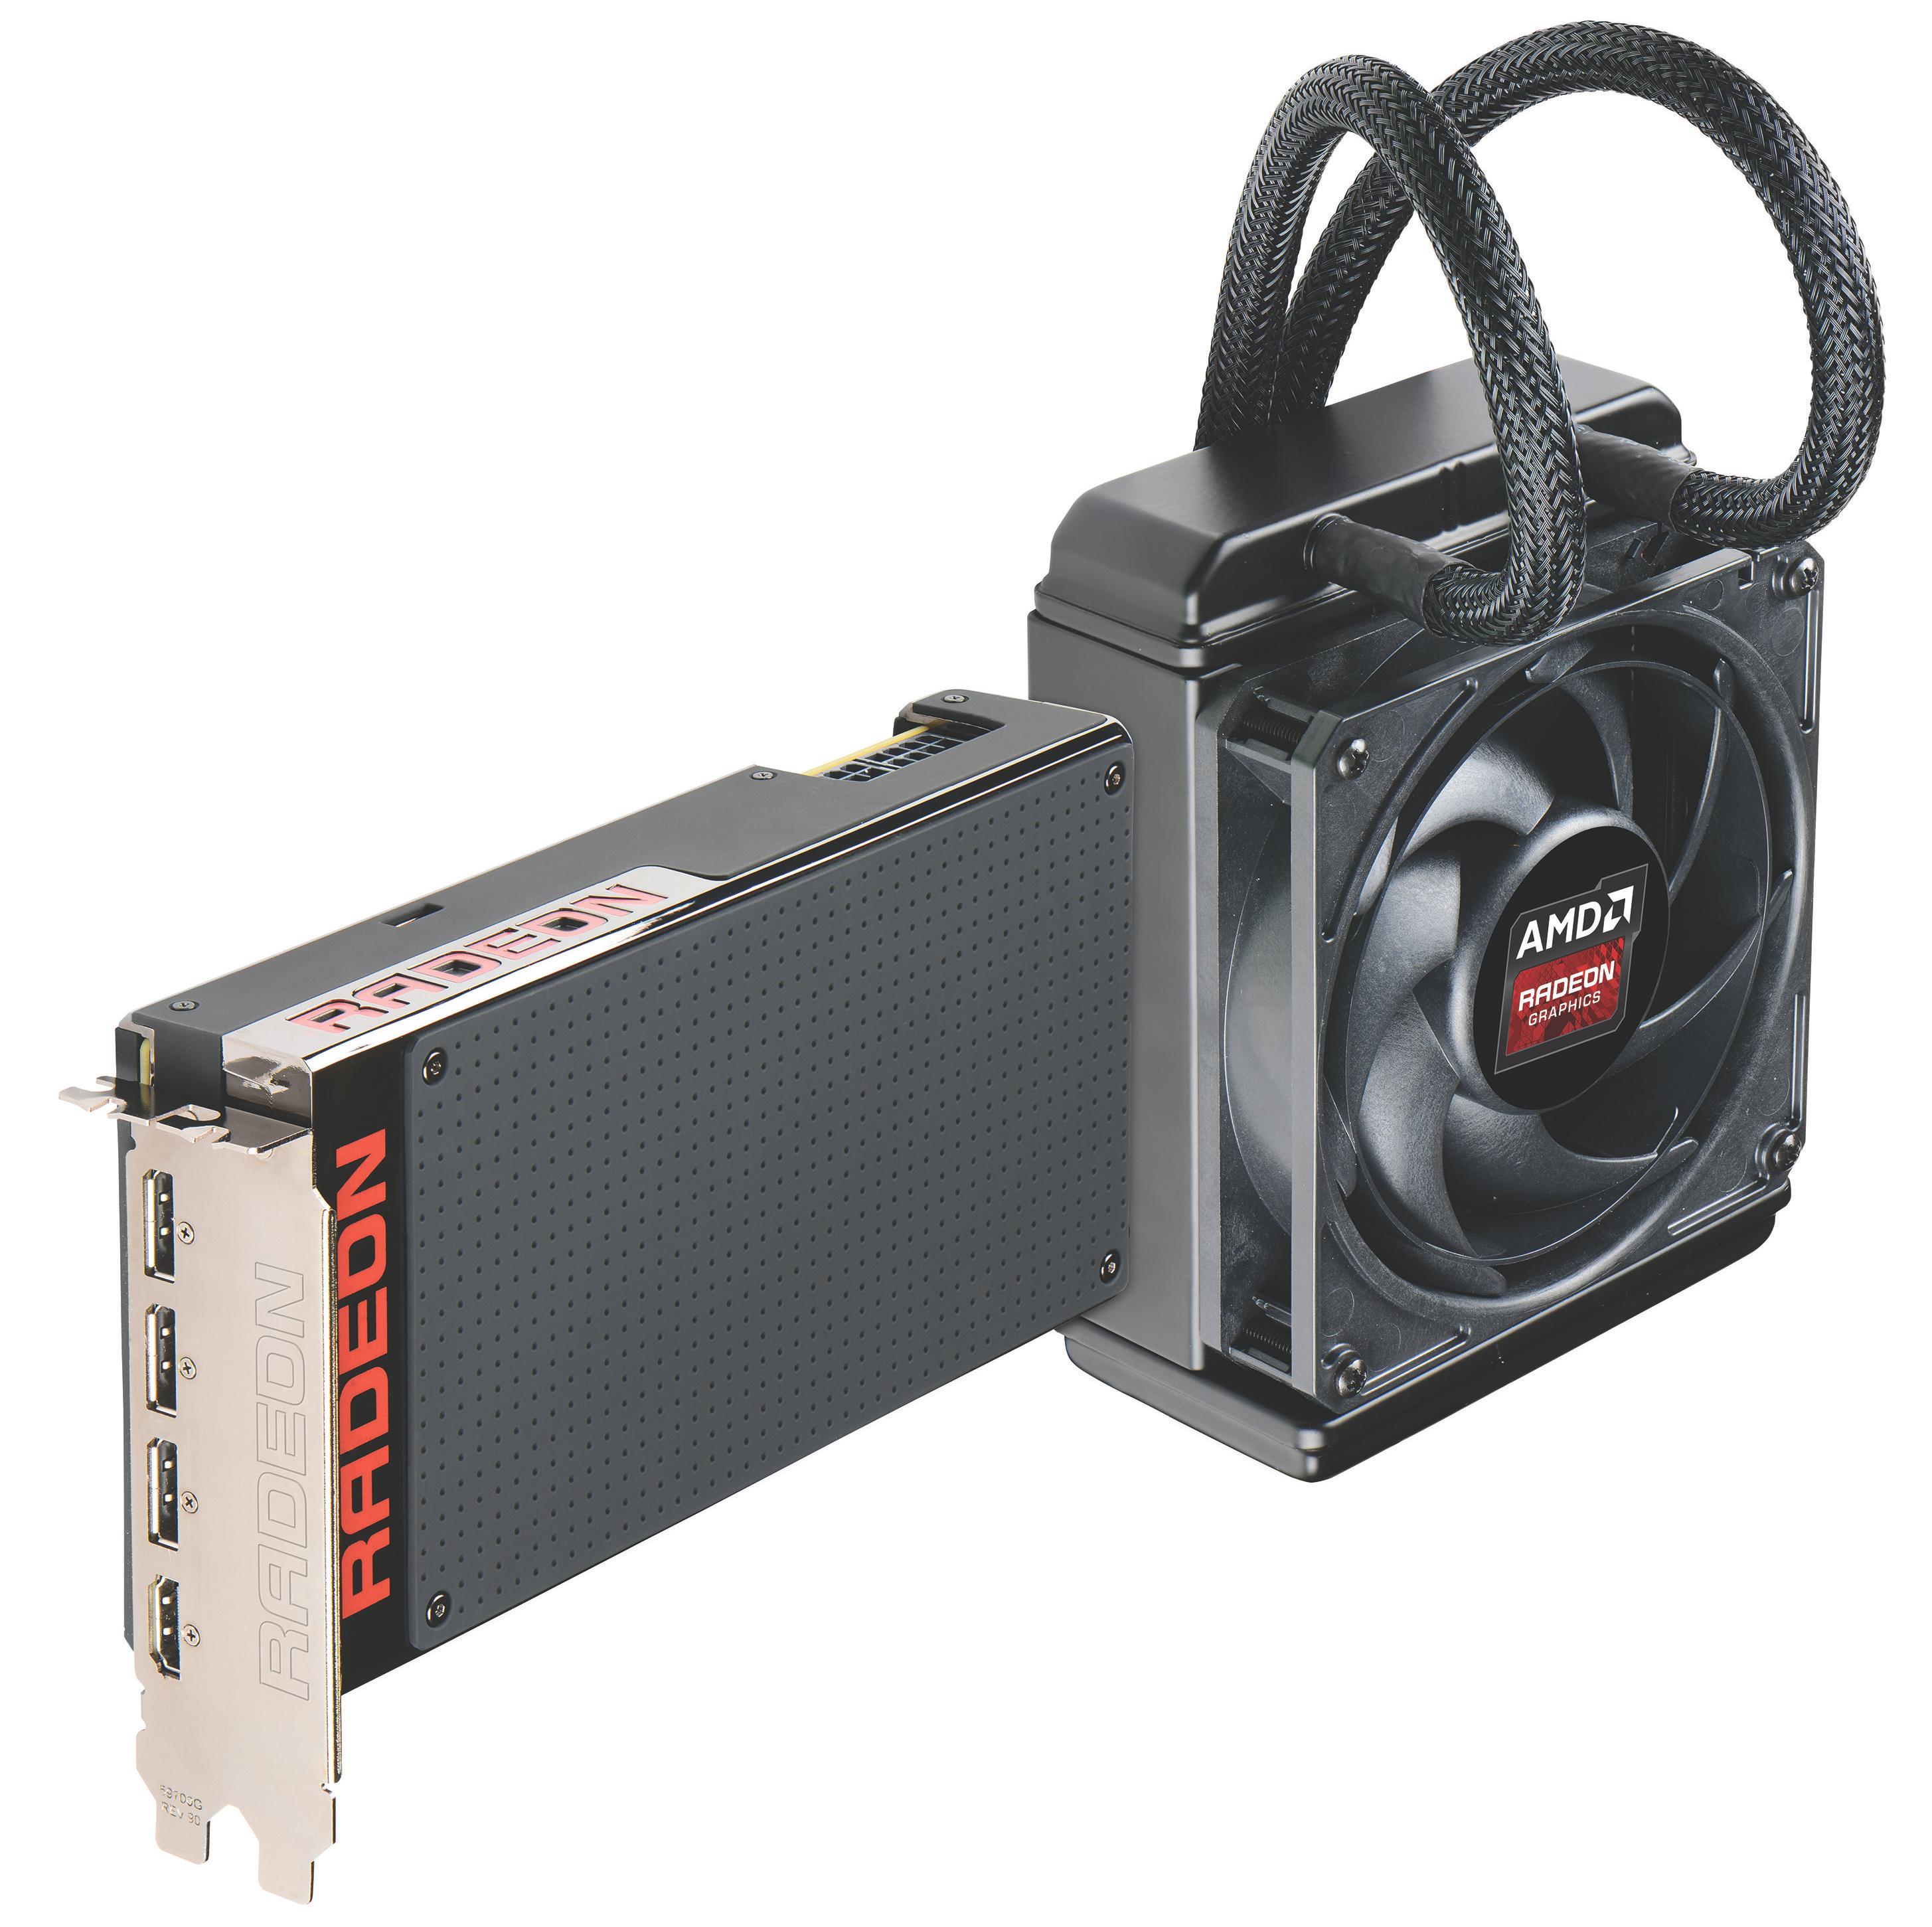 AMDs vannkjølte Radeon R9 Fury X overklokker svært godt skal vi tro AMD. Kortet kan nok også bli en svært sterk konkurrent mot Nvidias GTX 980 Ti. Foto: AMD